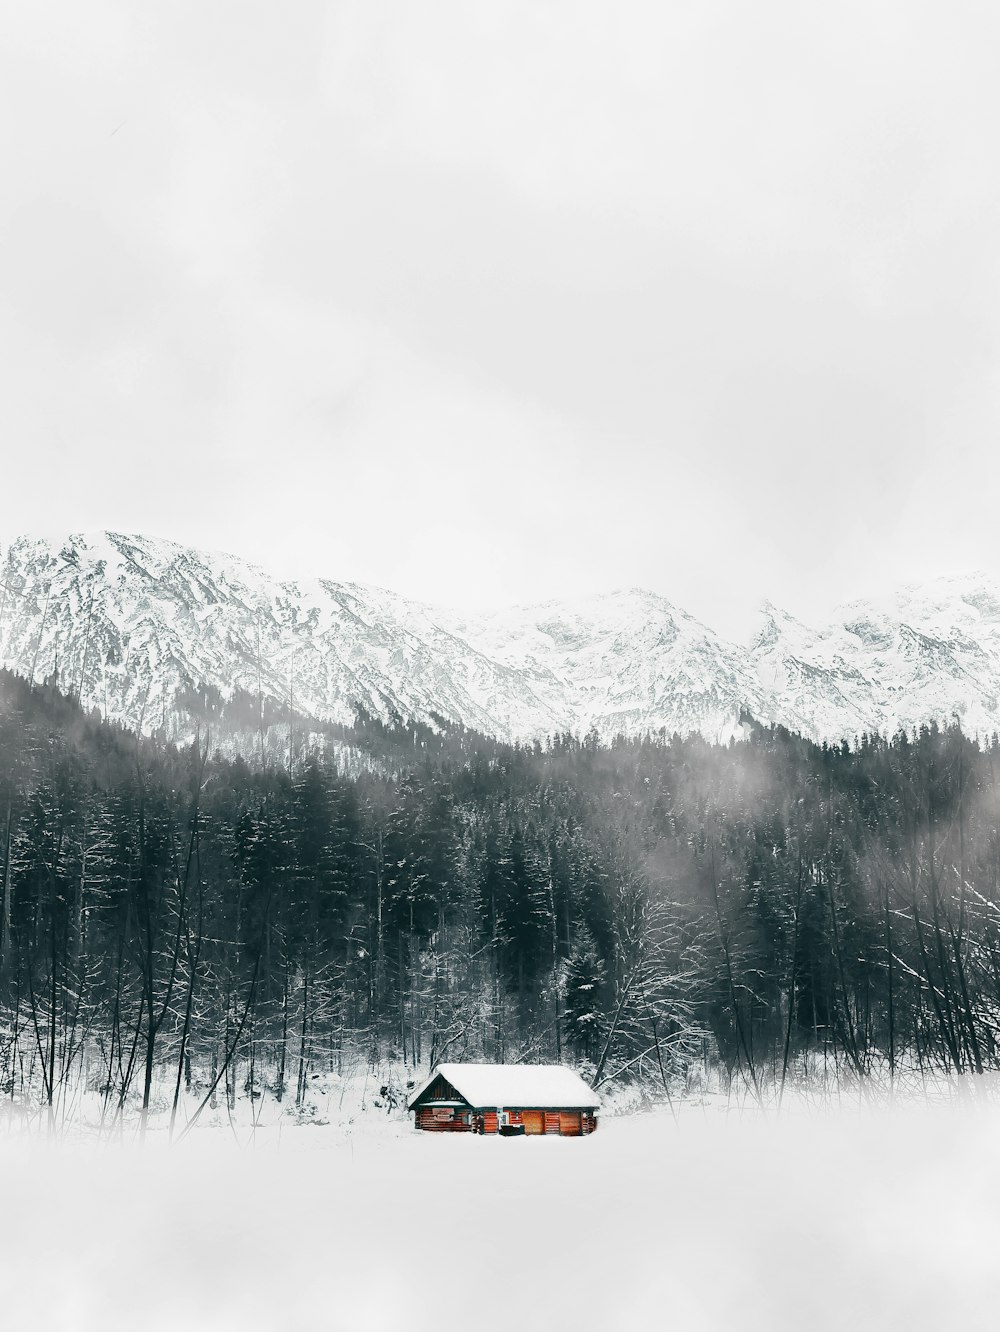 Casa marrone vicino agli alberi e alla montagna coperta di neve durante il giorno